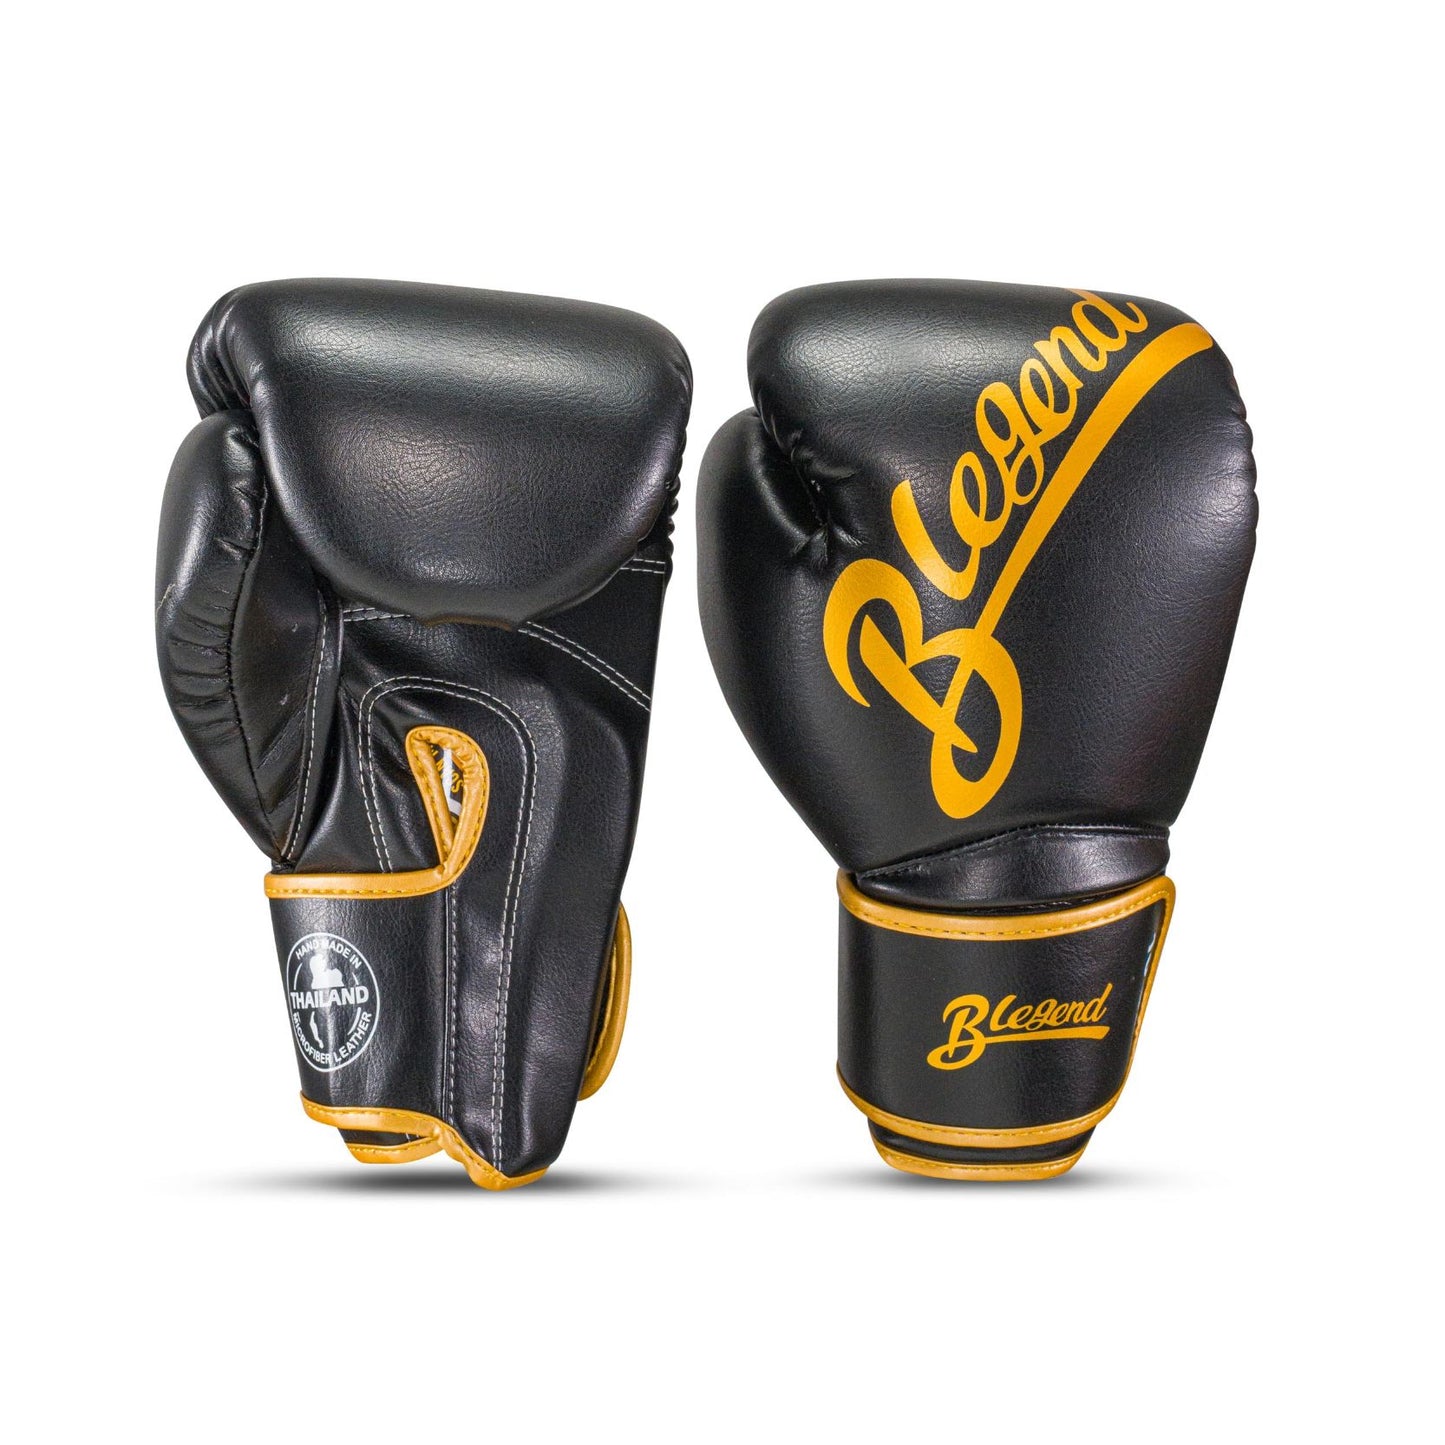 Blegend Boxing Gloves BGL32 Velcro Black